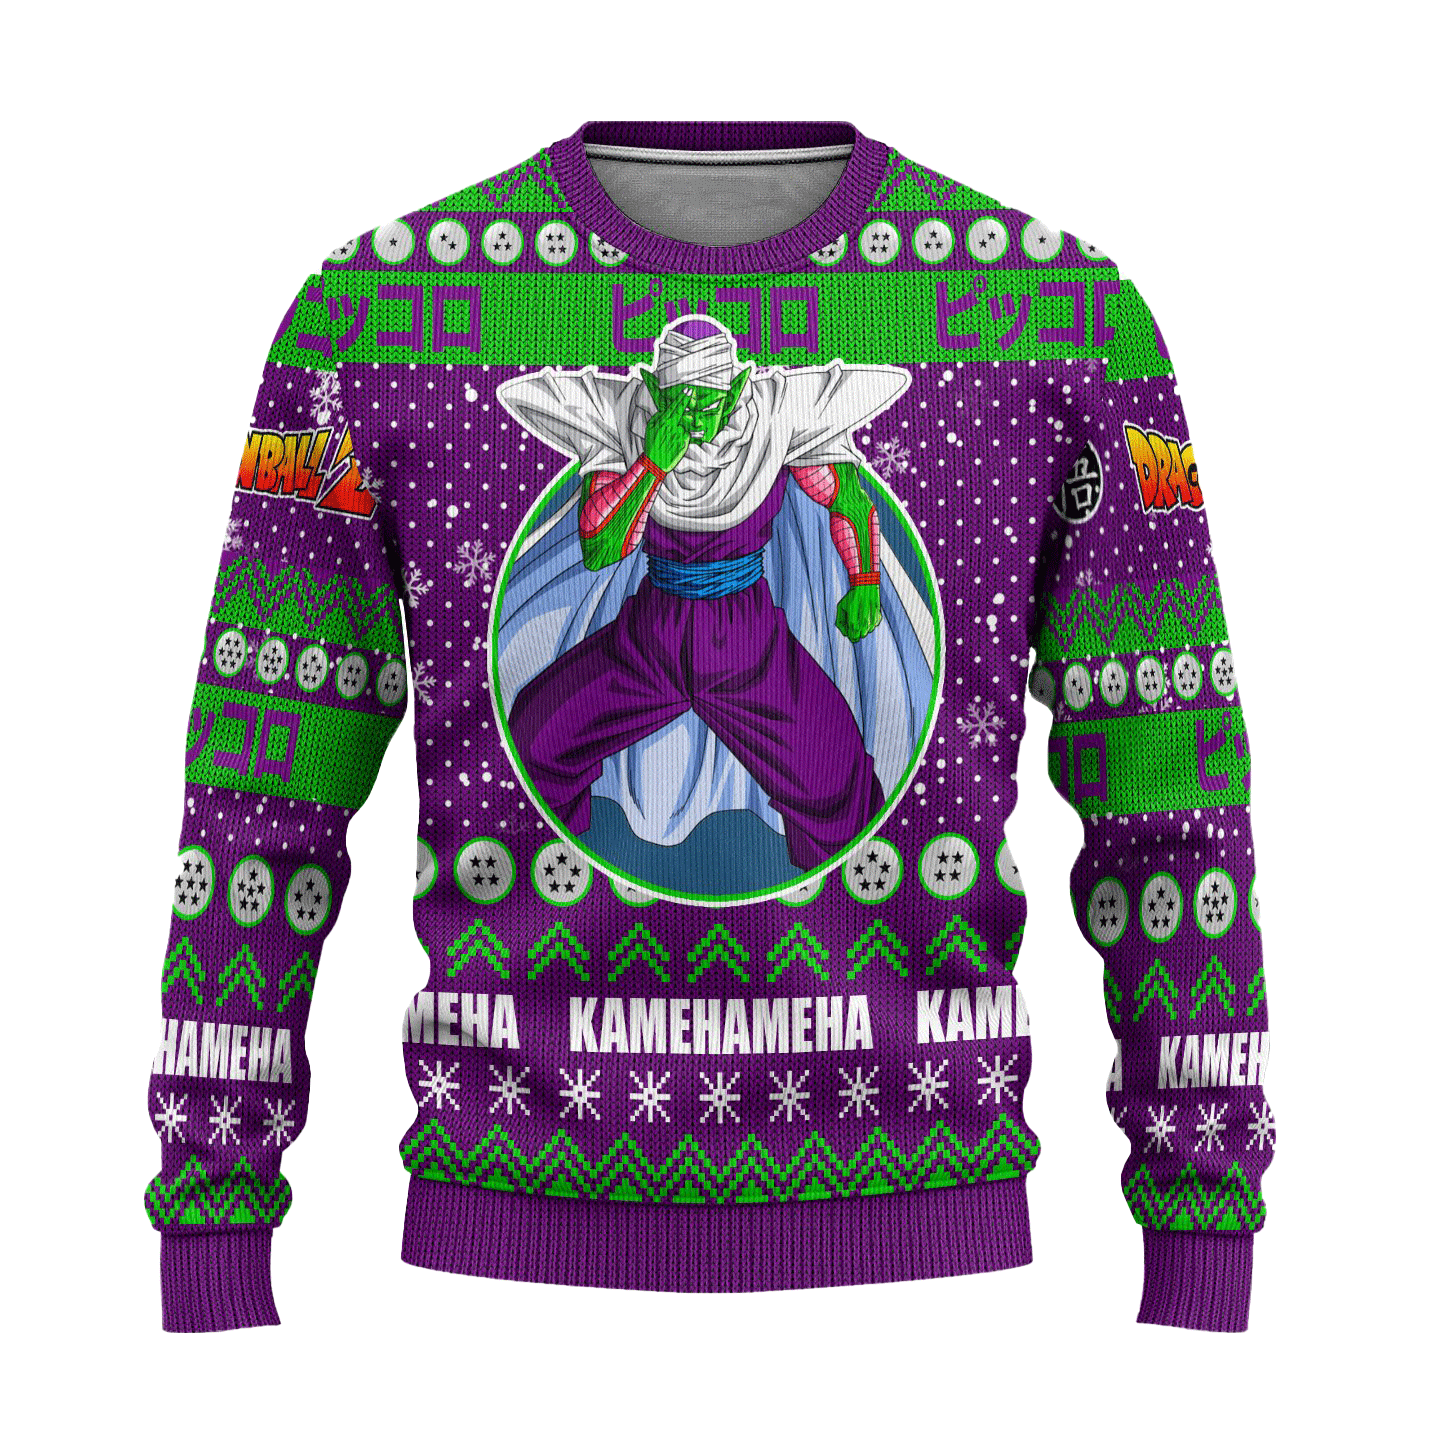 Piccolo Anime Ugly Christmas Sweater Dragon Ball Z Xmas Gift